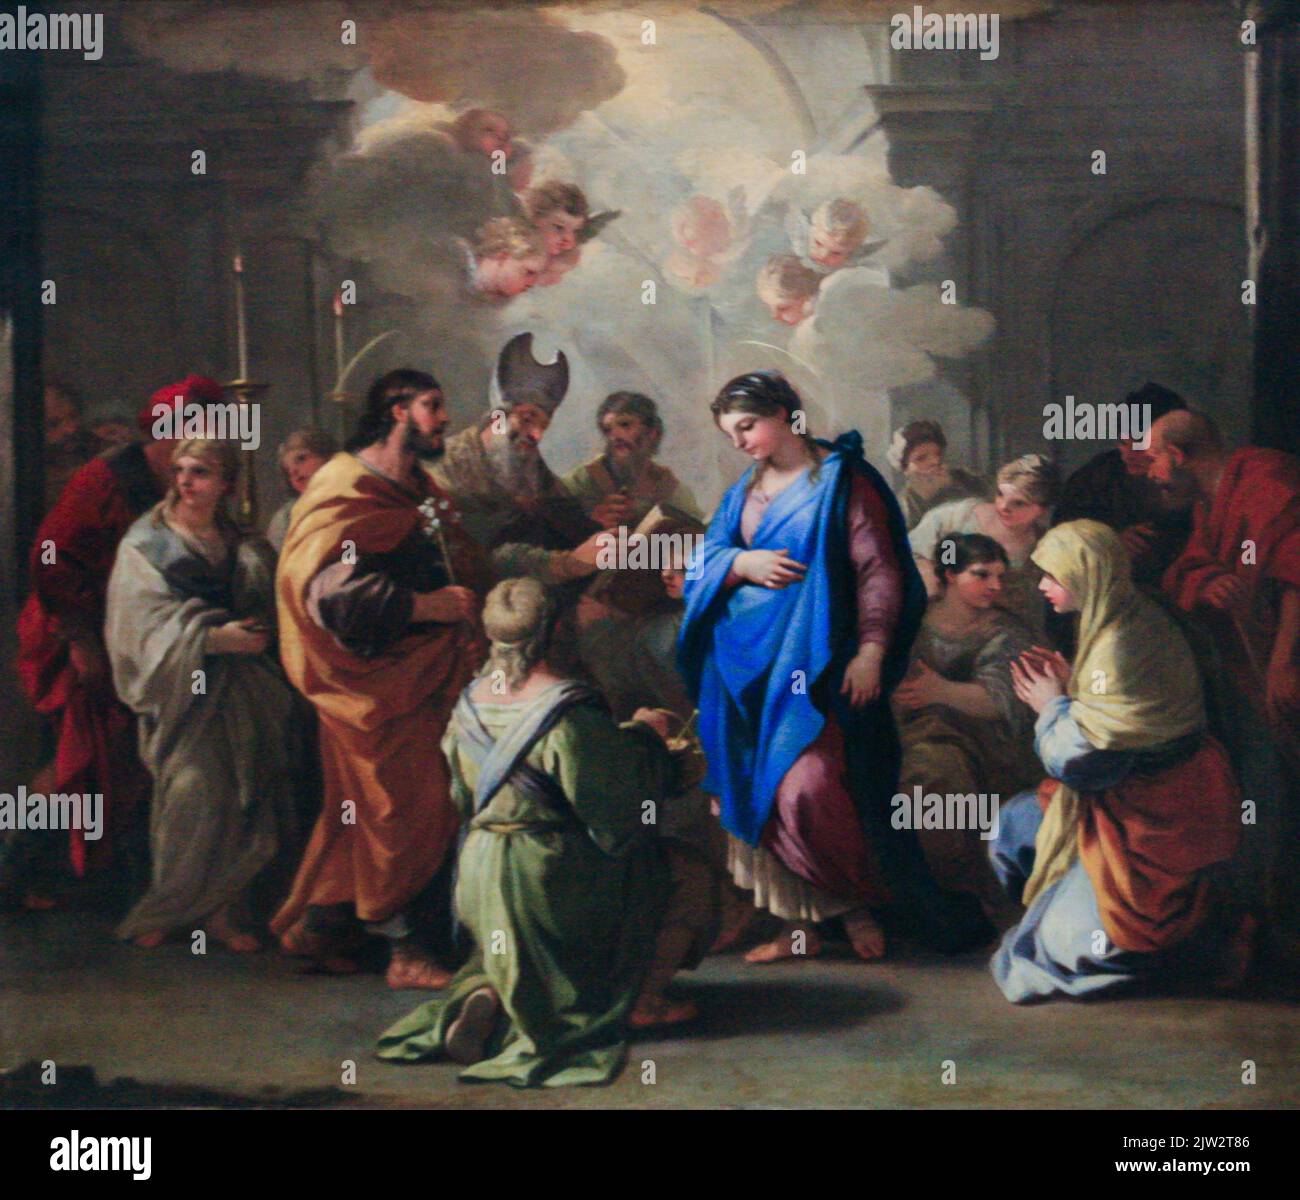 MATRIMONIO DE LA VIRGEN - Pintura al óleo por Luca Giordano, pintor barroco italiano, Museo del Louvre, París, Francia - 2019 DE AGOSTO Foto de stock